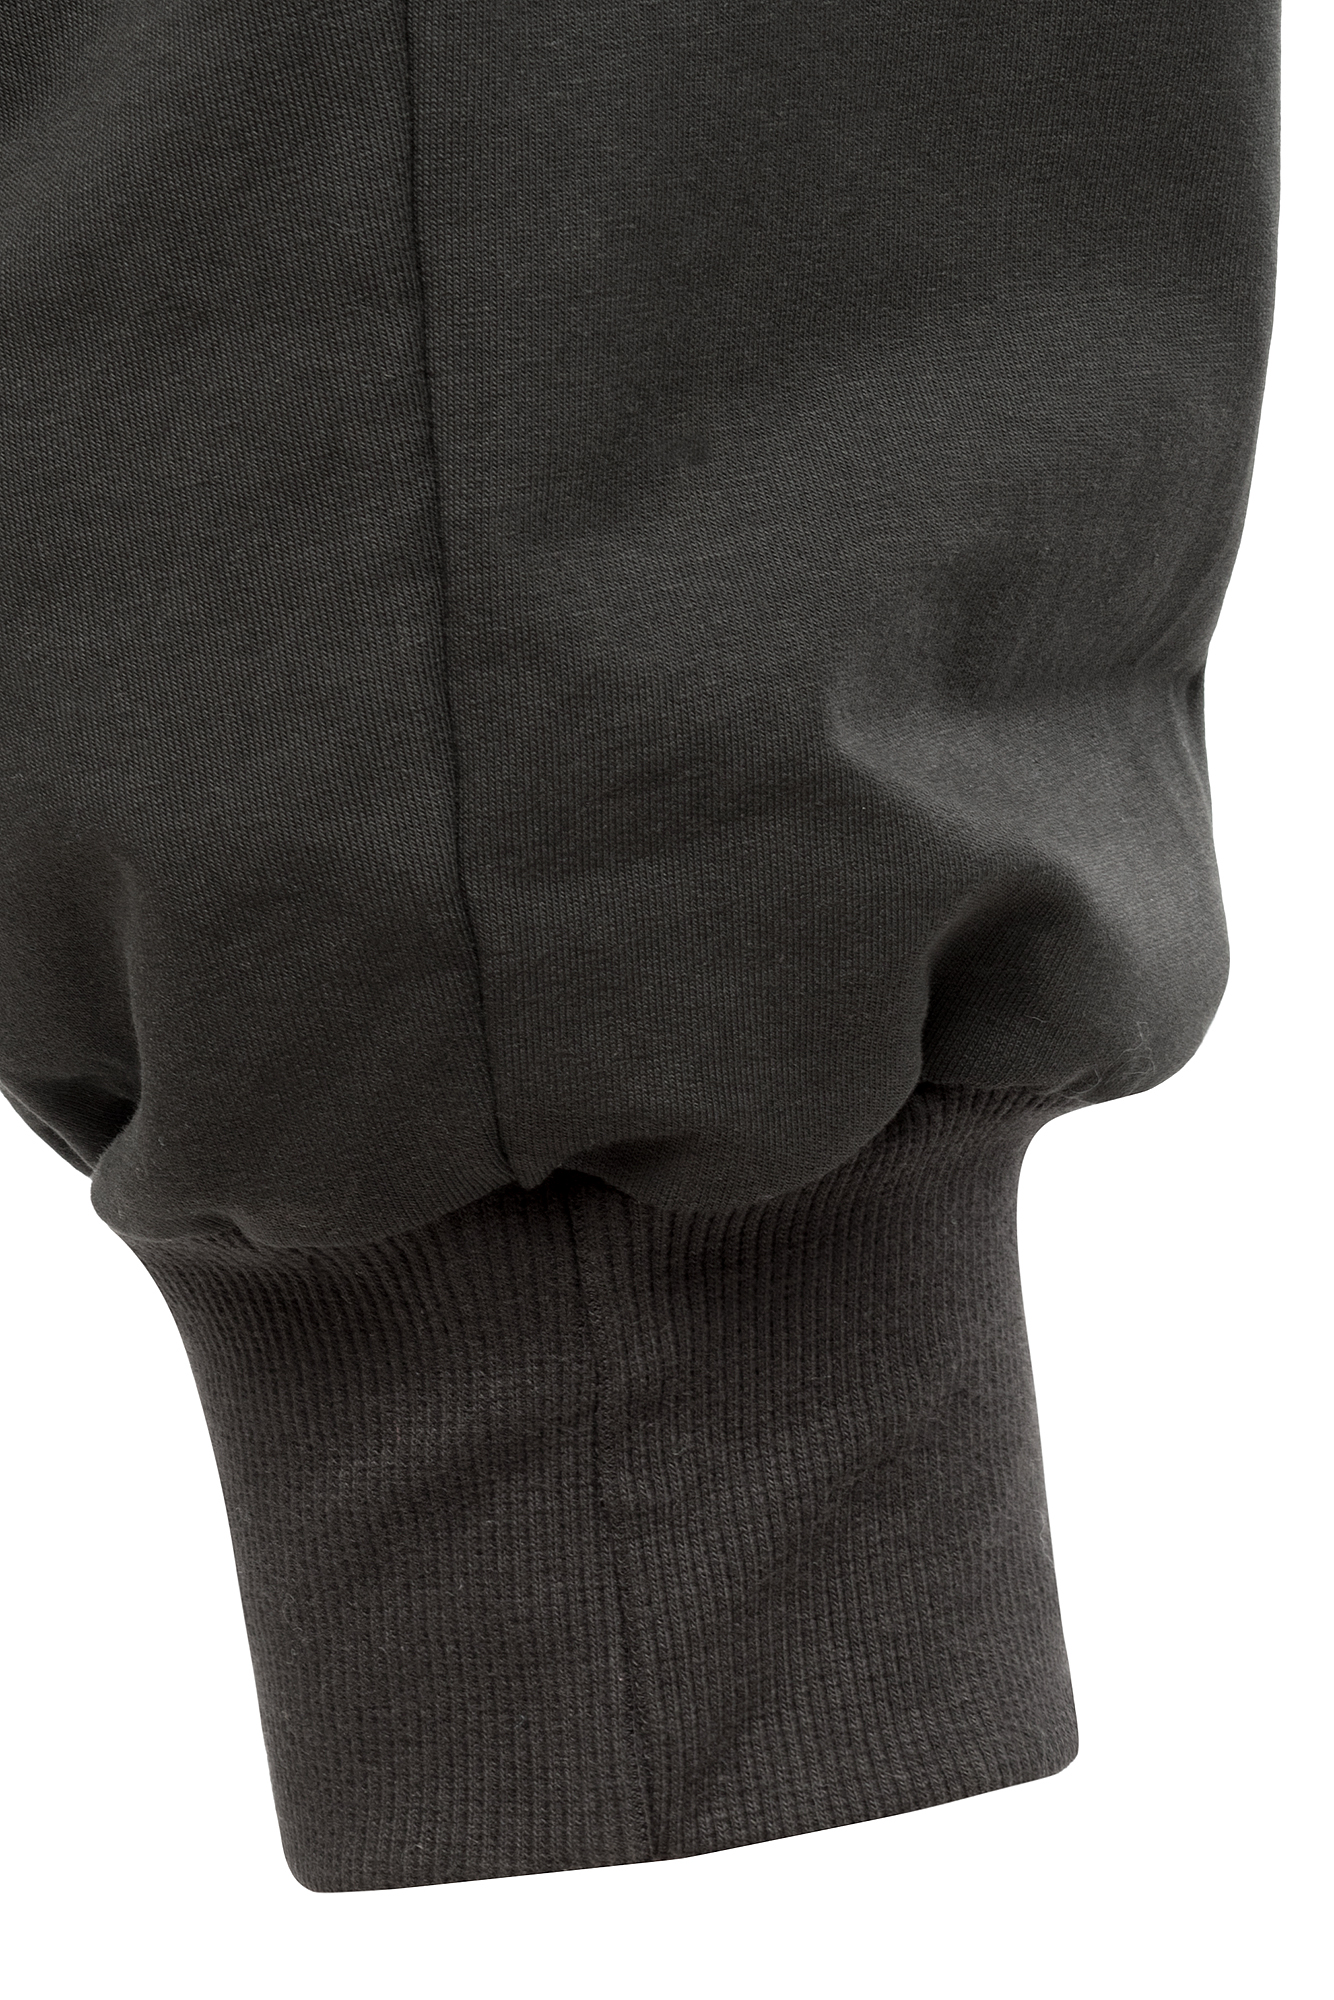 Трикотажные брюки "Премиум комби" (ЧС) оптом и в розницу